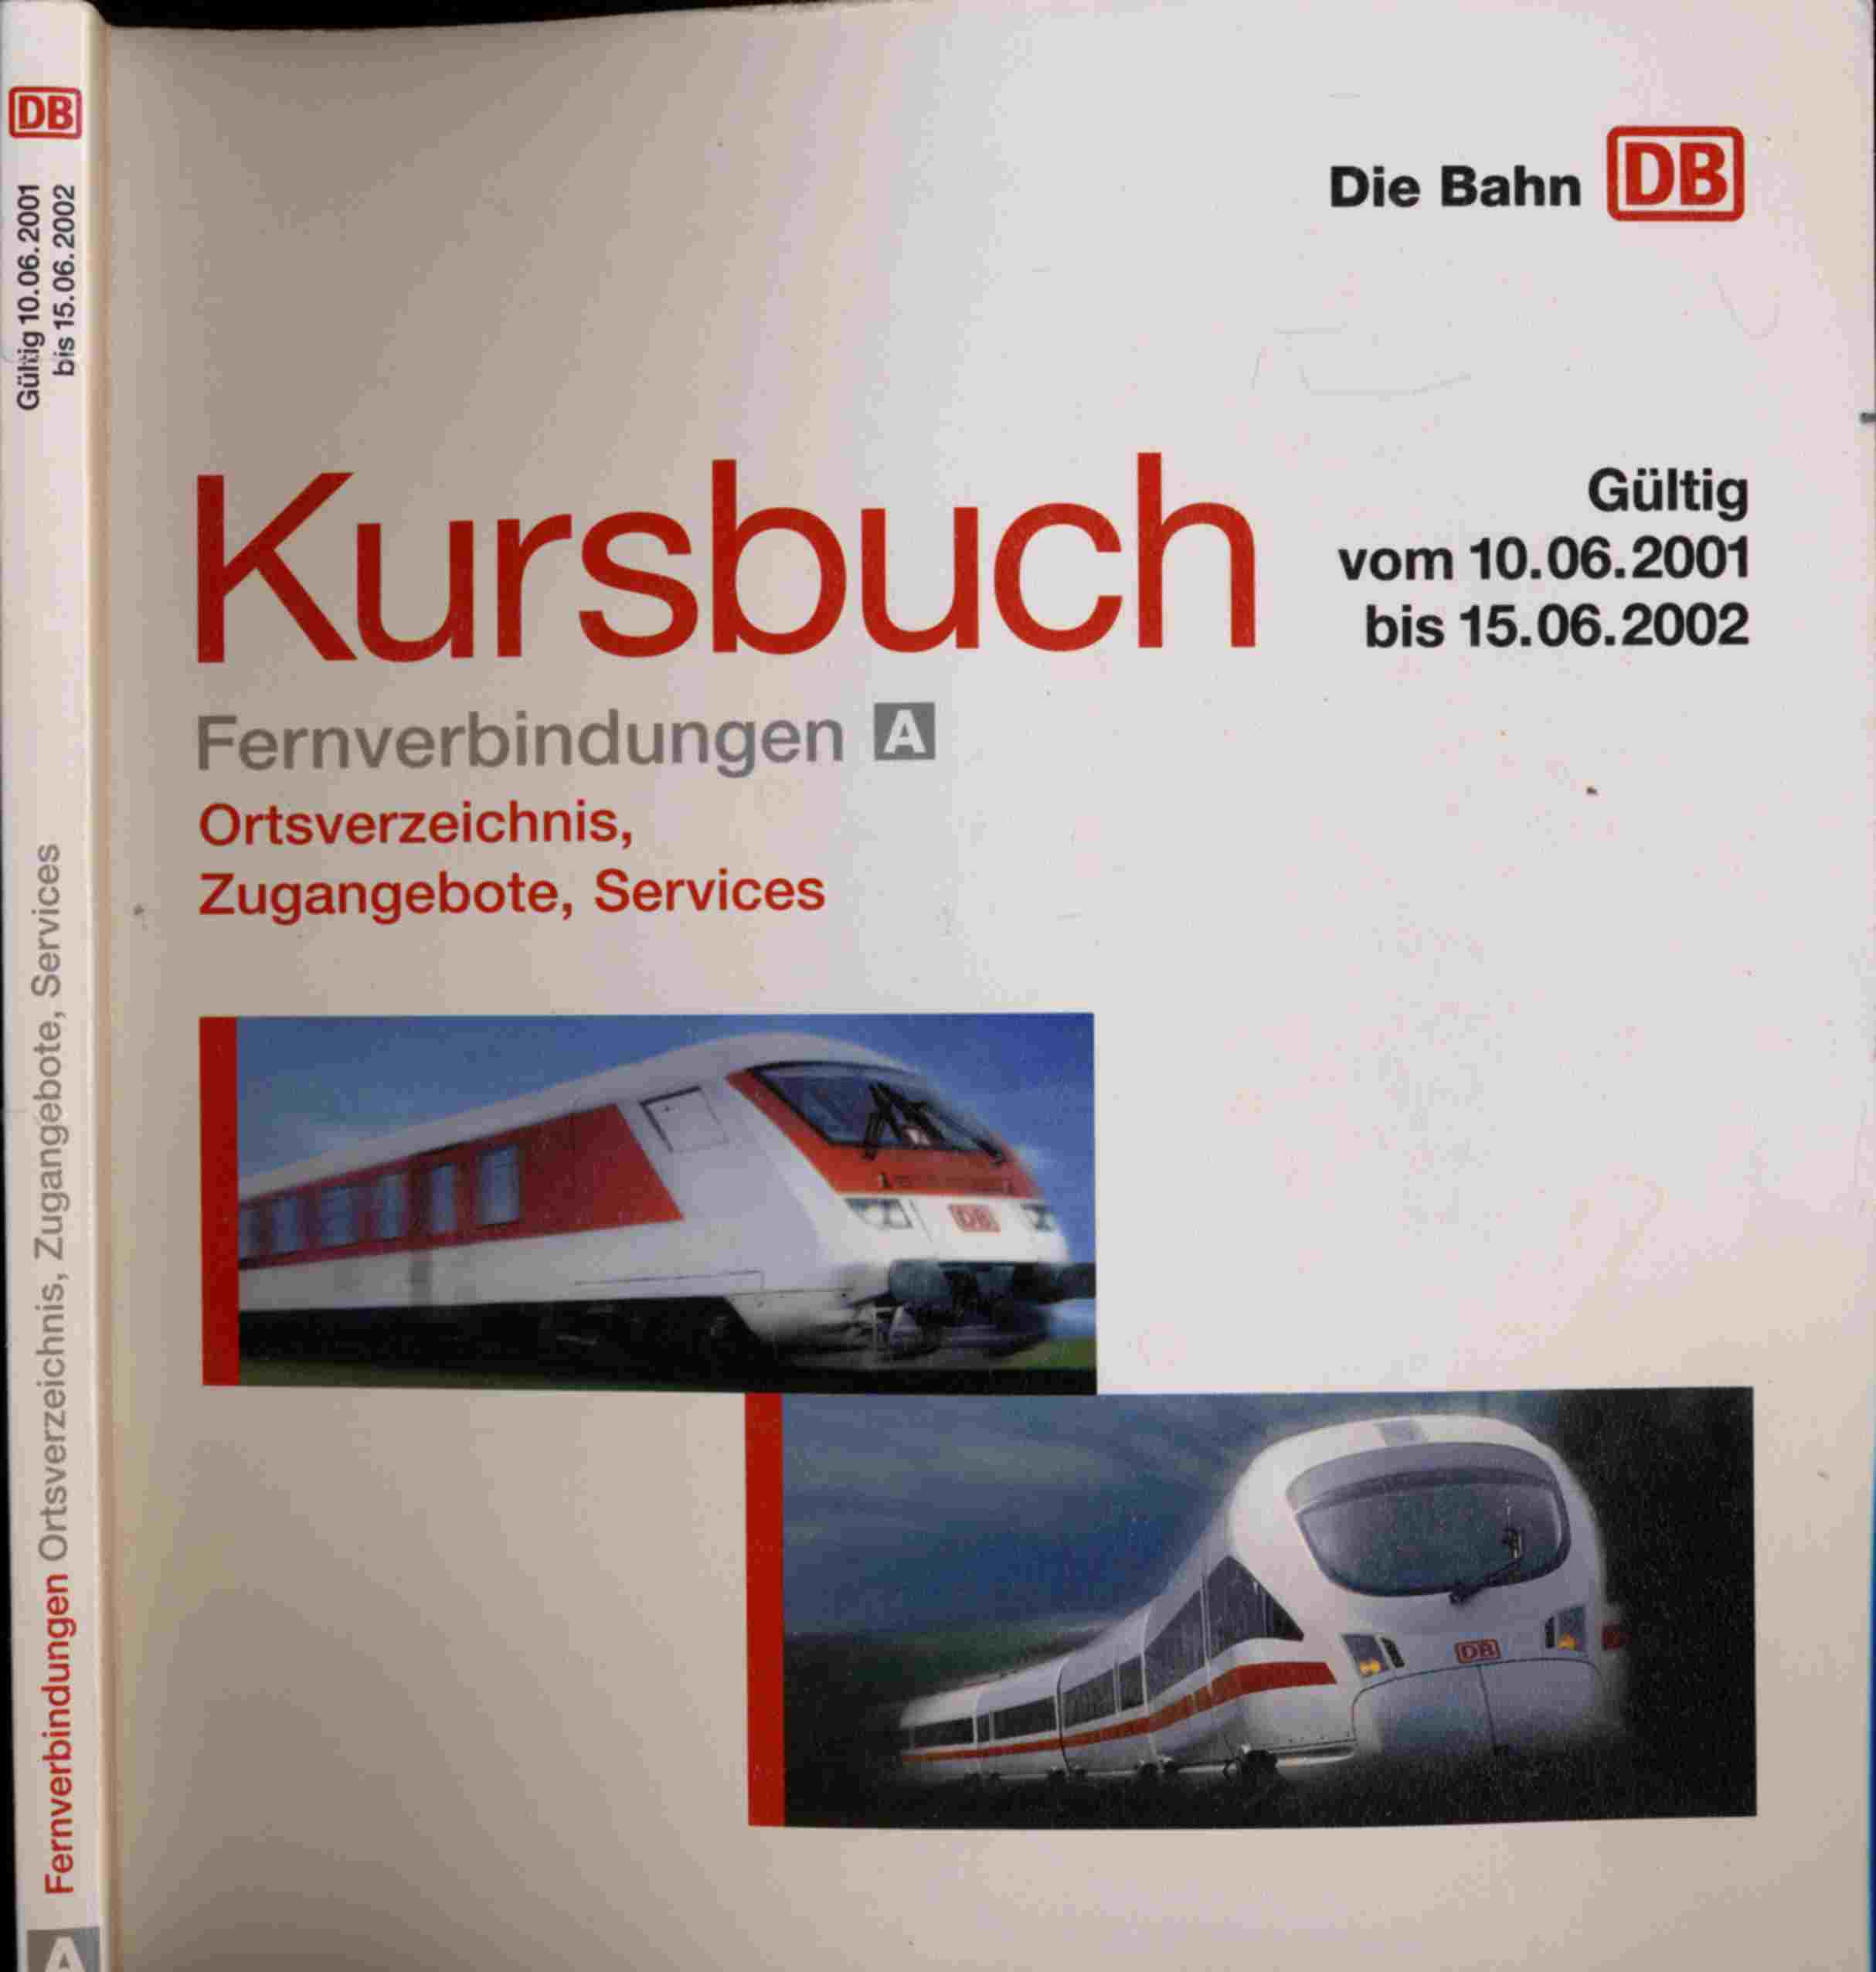   Deutsche Bahn: Kursbuch. Fernverbindungen Teilband A. Ortsverzeichnis, Zugangebote, Services. Gültig vom 10.06.2001 bis 15.06.2002. 